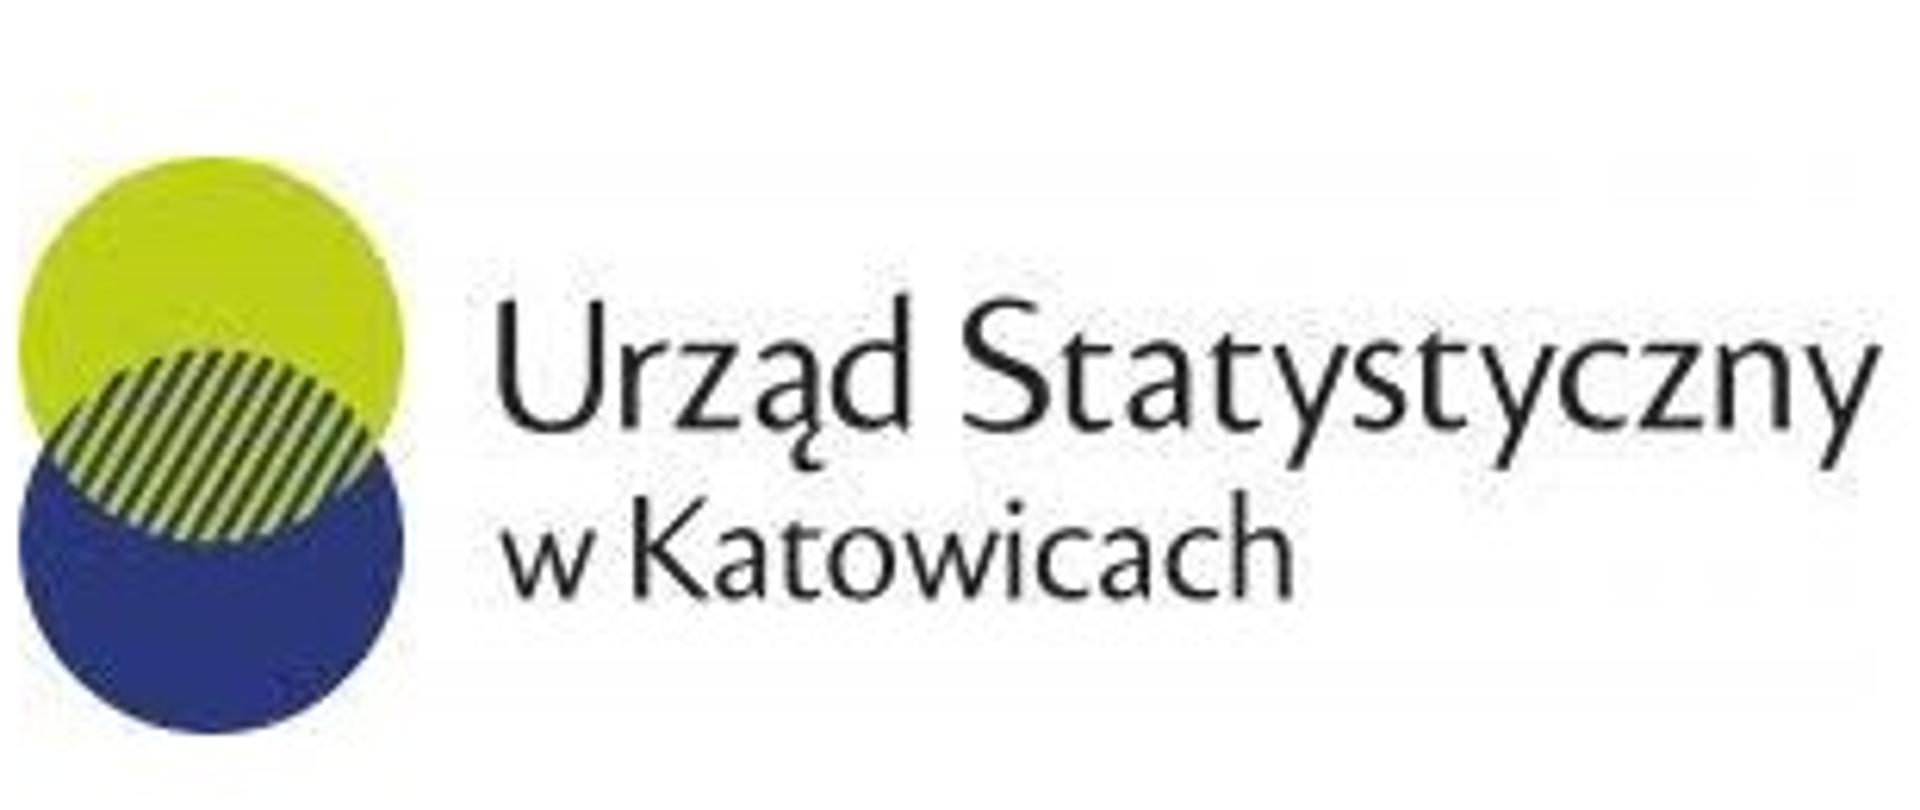 Logo Urzędu Statystycznego w Katowicach. Na białym tle zachodzące na siebie w układzie pionowym dwa koła, żółte i niebieskie, tworzące część wspólną. Z prawej strony napis Urząd Statystyczny w Katowicach